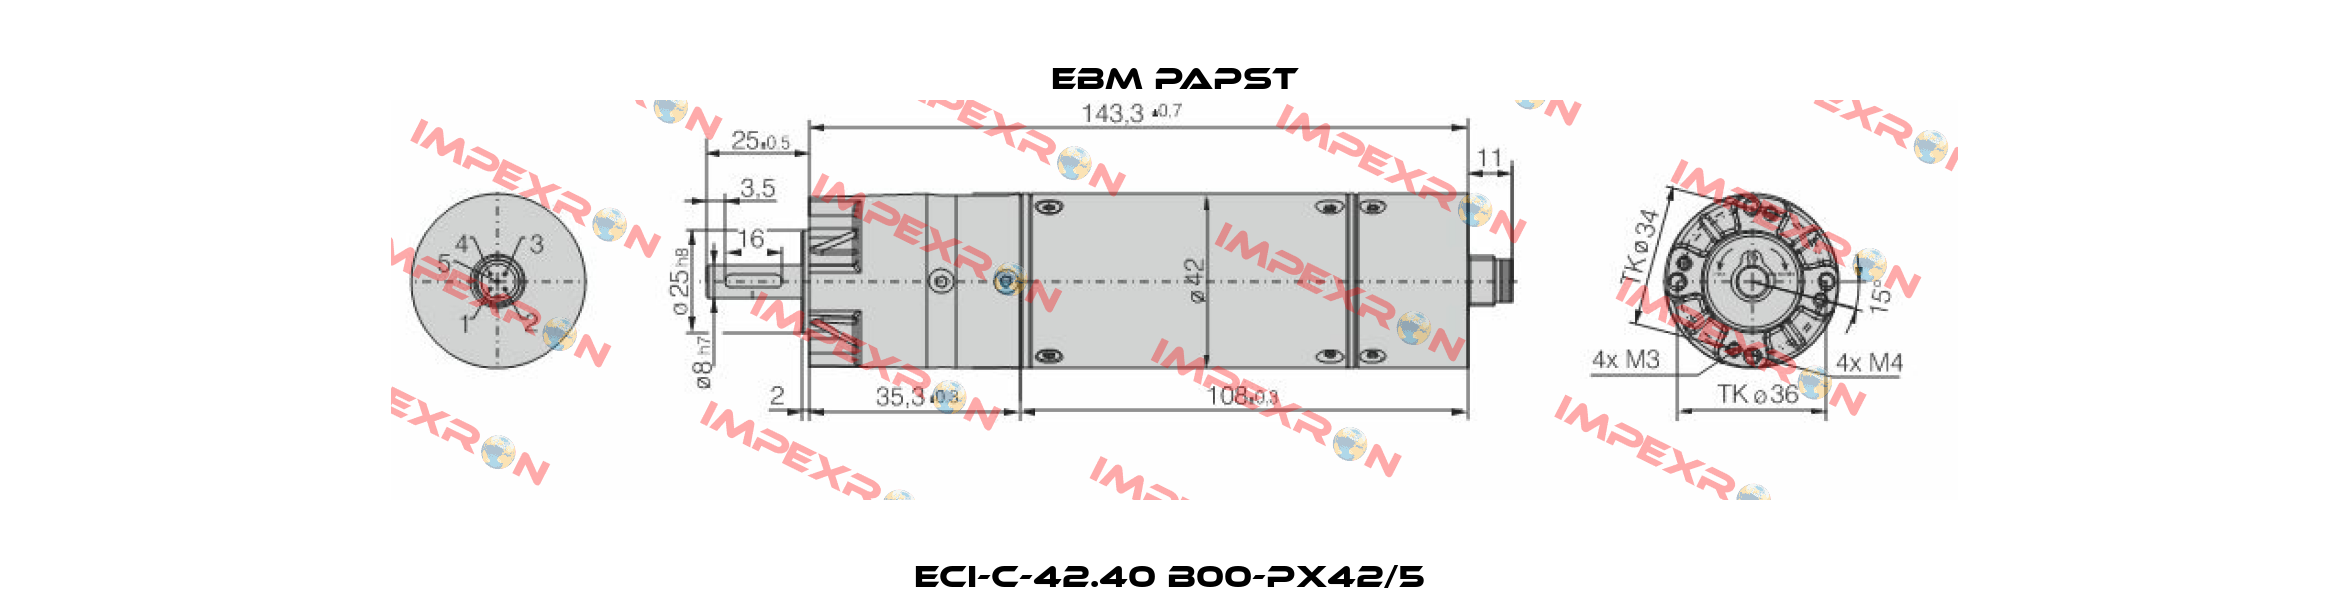 ECI-C-42.40 B00-PX42/5  EBM Papst